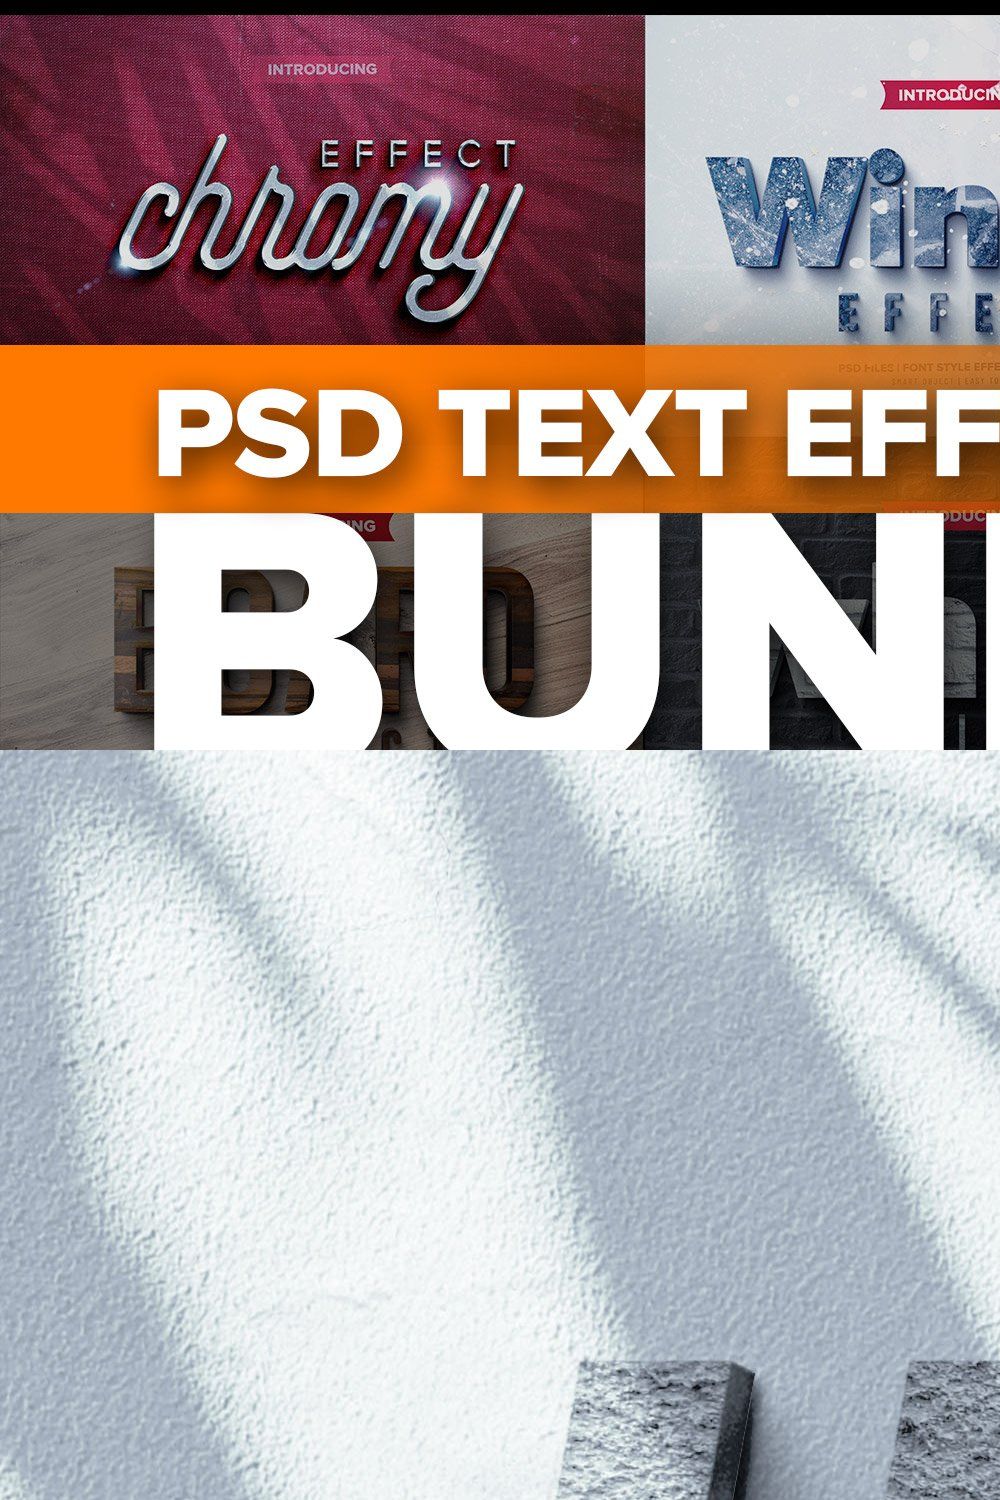 Photoshop 3D text effects BUNDLE 3 pinterest preview image.